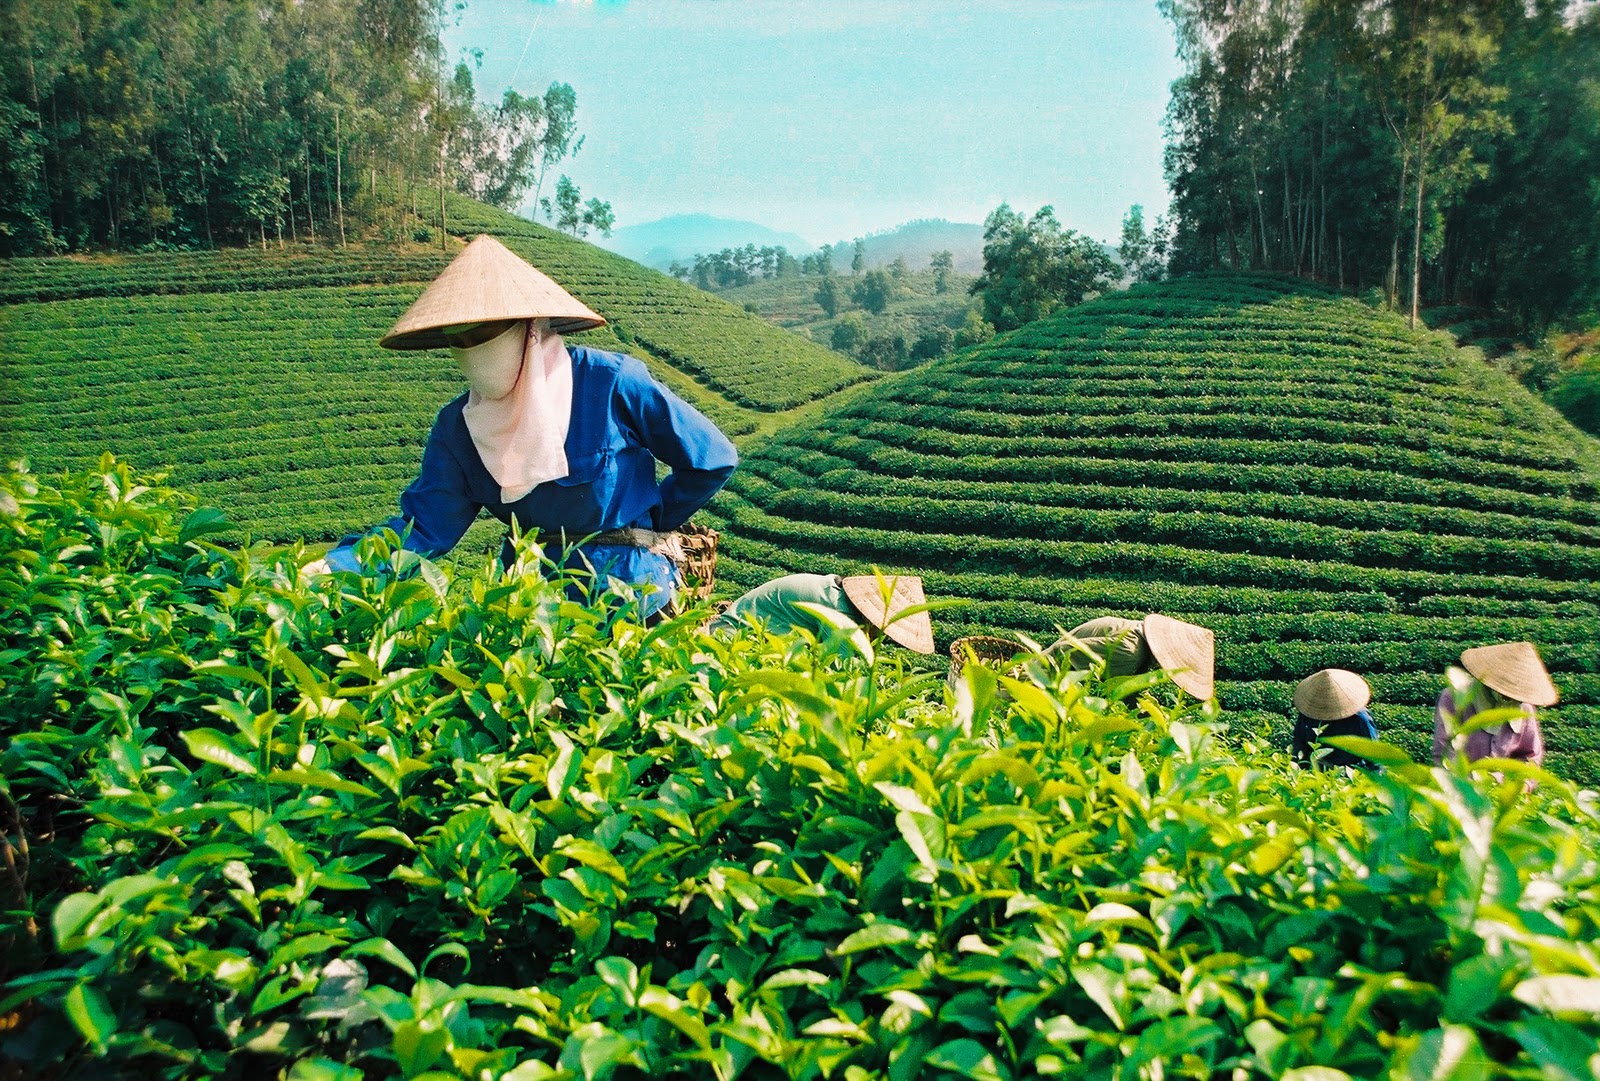  茶农把嫩绿的茶尖采摘回去炒制。 图自越通社